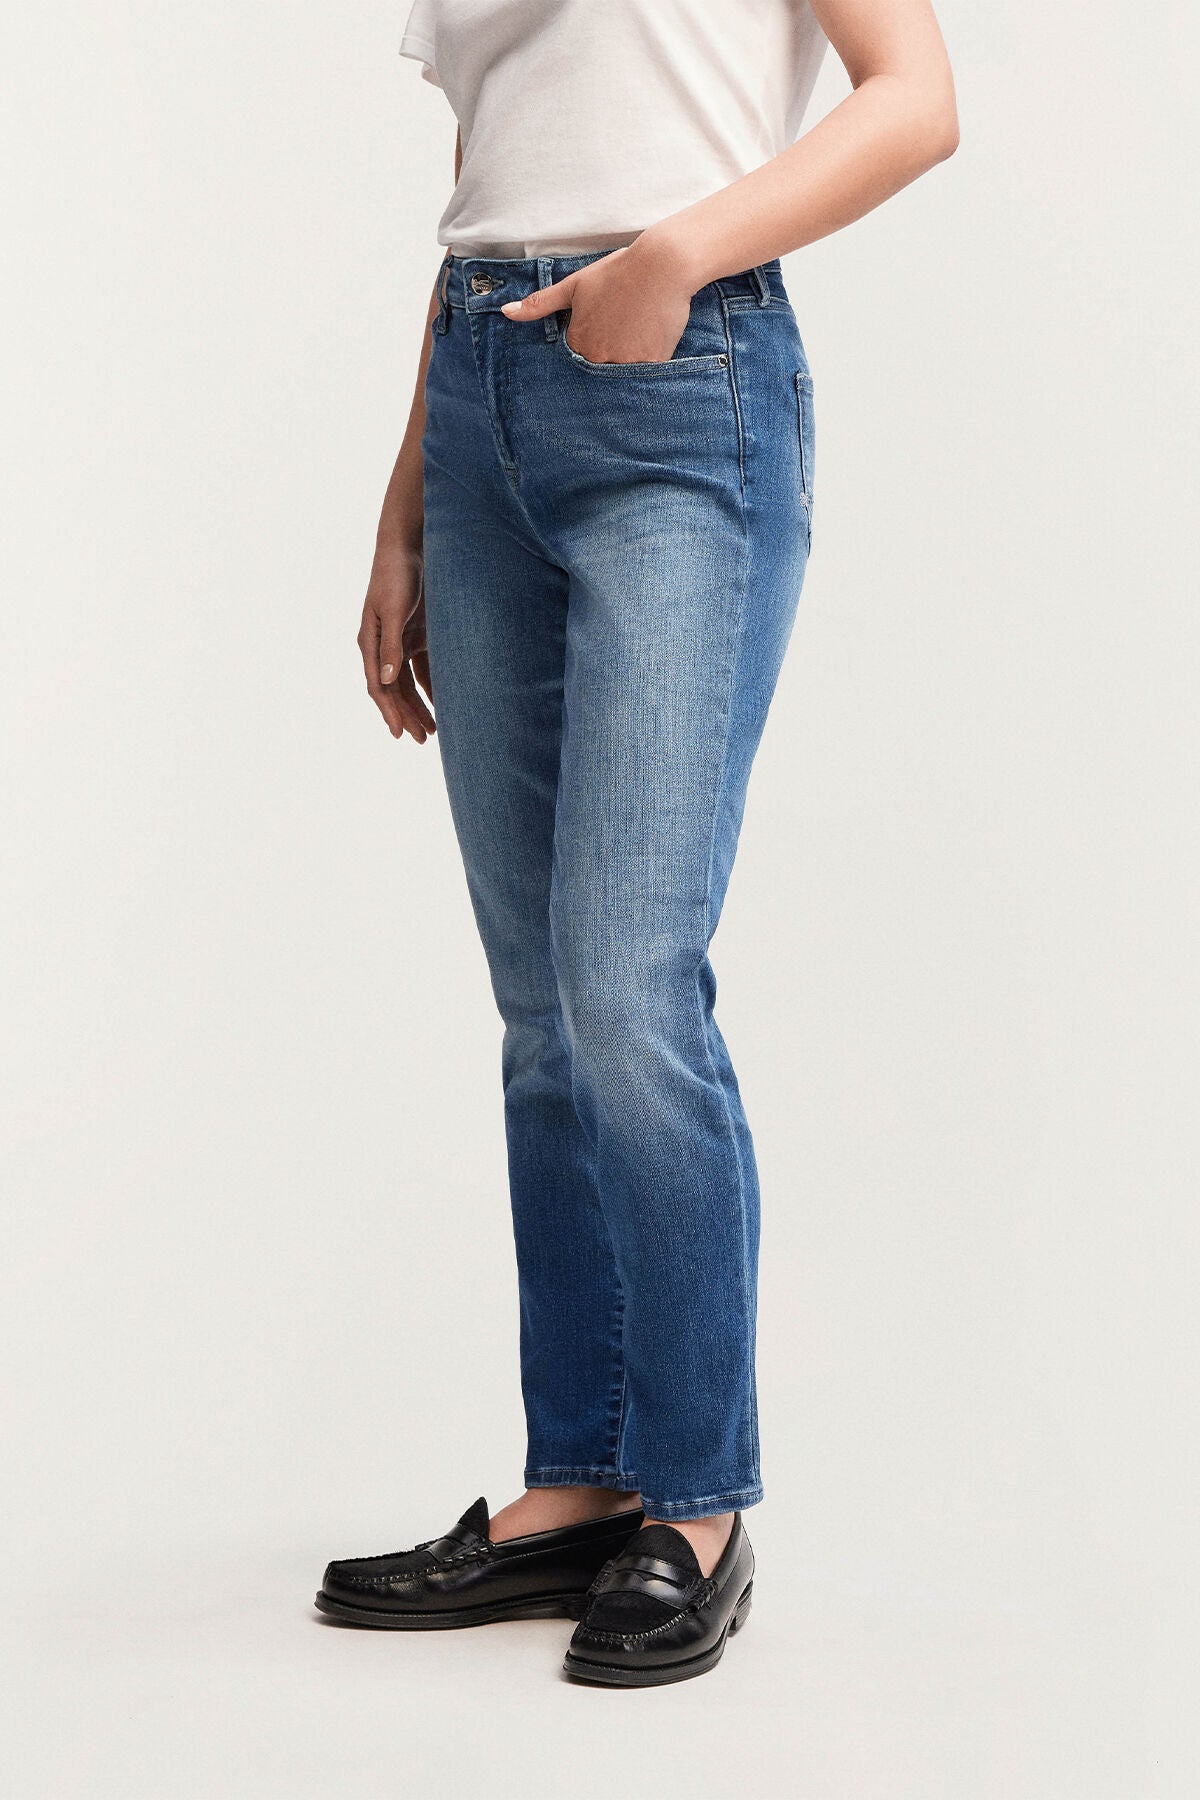 A woman is standing in a Denham MARGOT High Slim - Light Worn Indigo shirt and jeans.